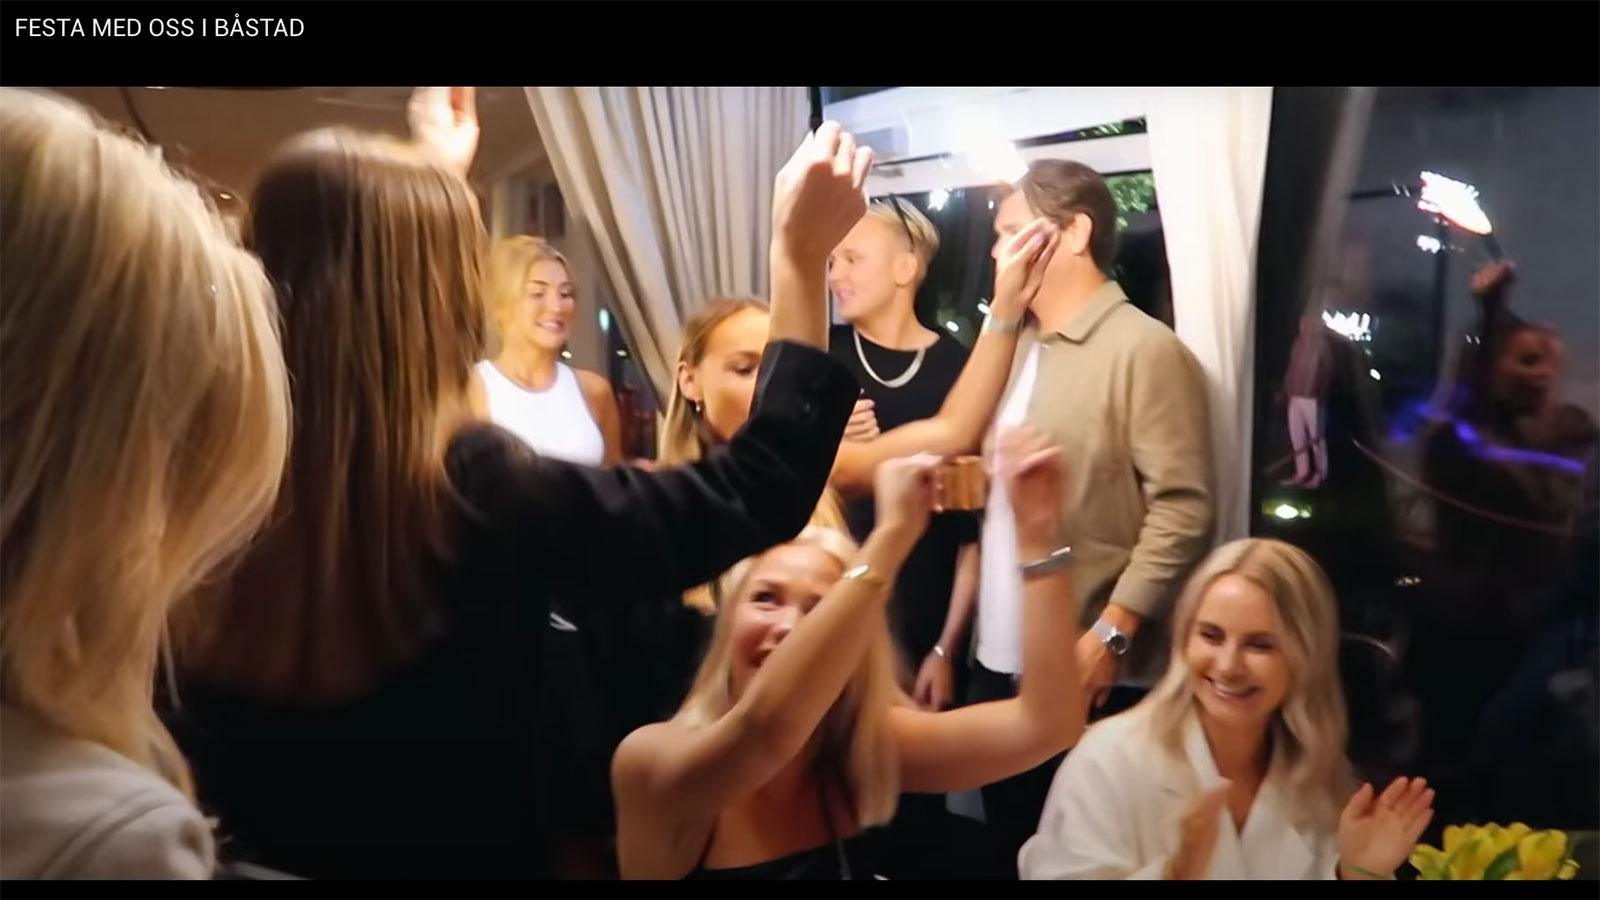 Ur Bianca Ingrossos video ”Festa med oss i Båstad”.